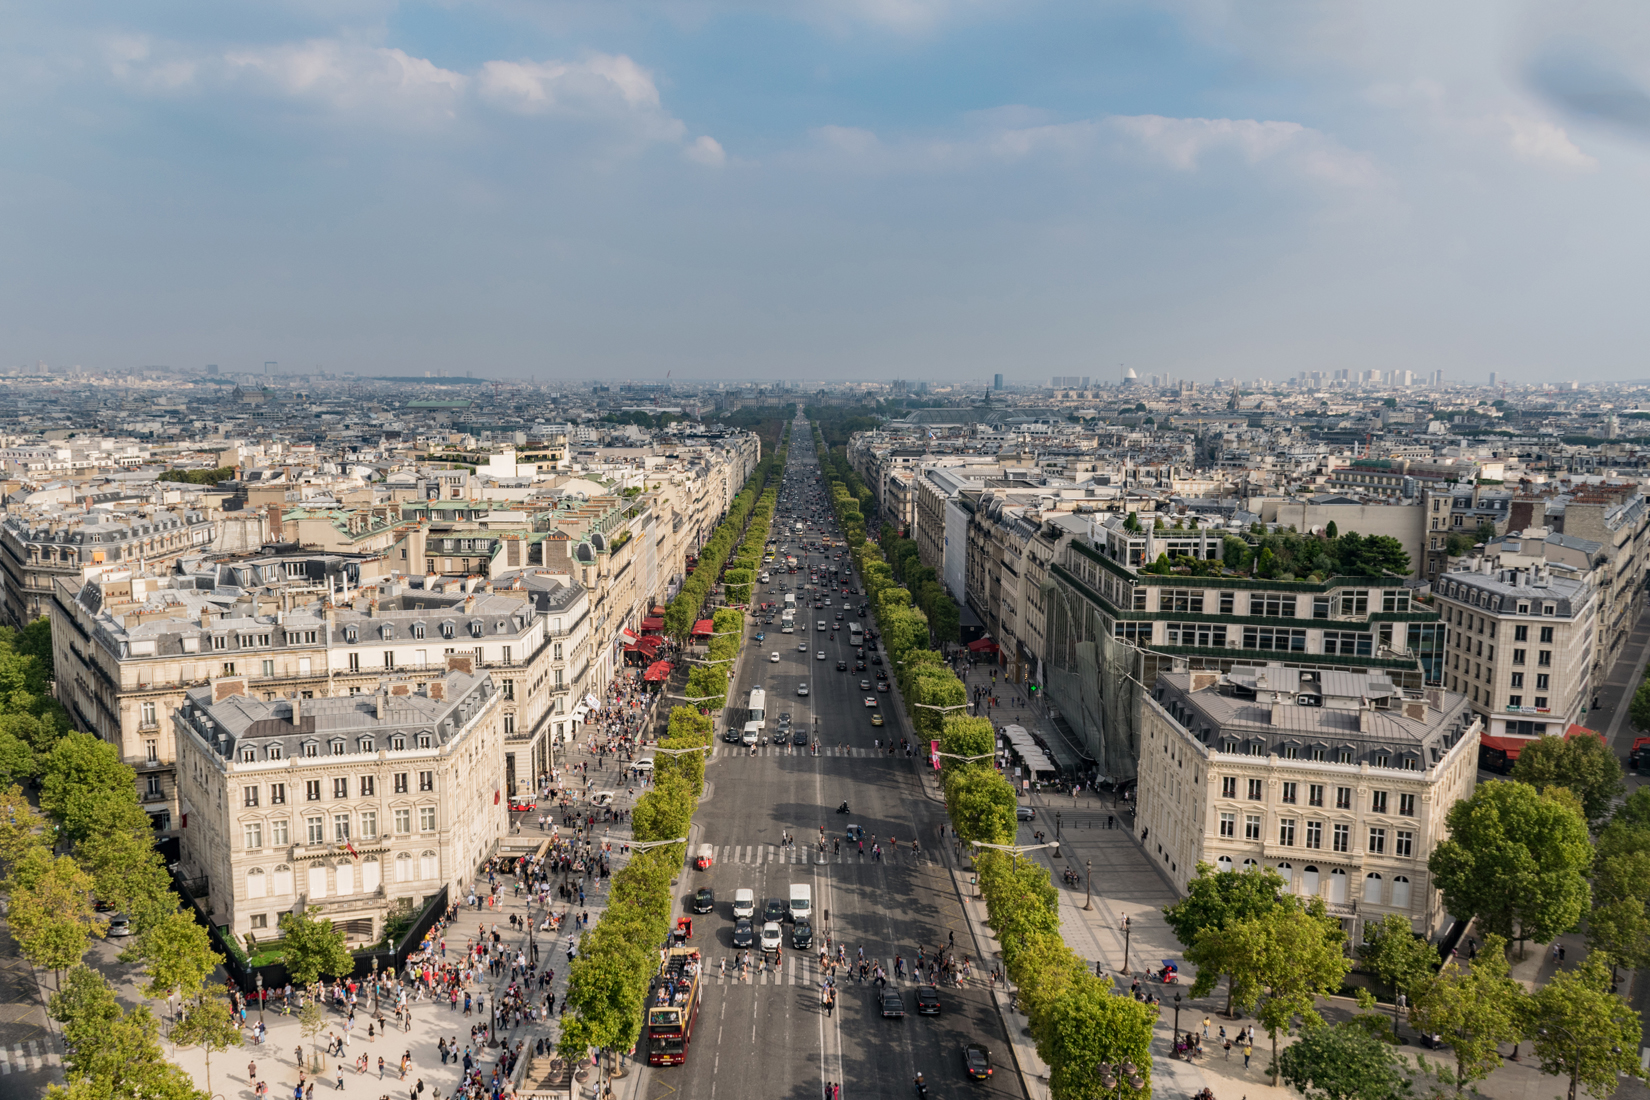 The Avenue des Champs-Élysées boulevard from The Arc de Triomphe de l'Étoile